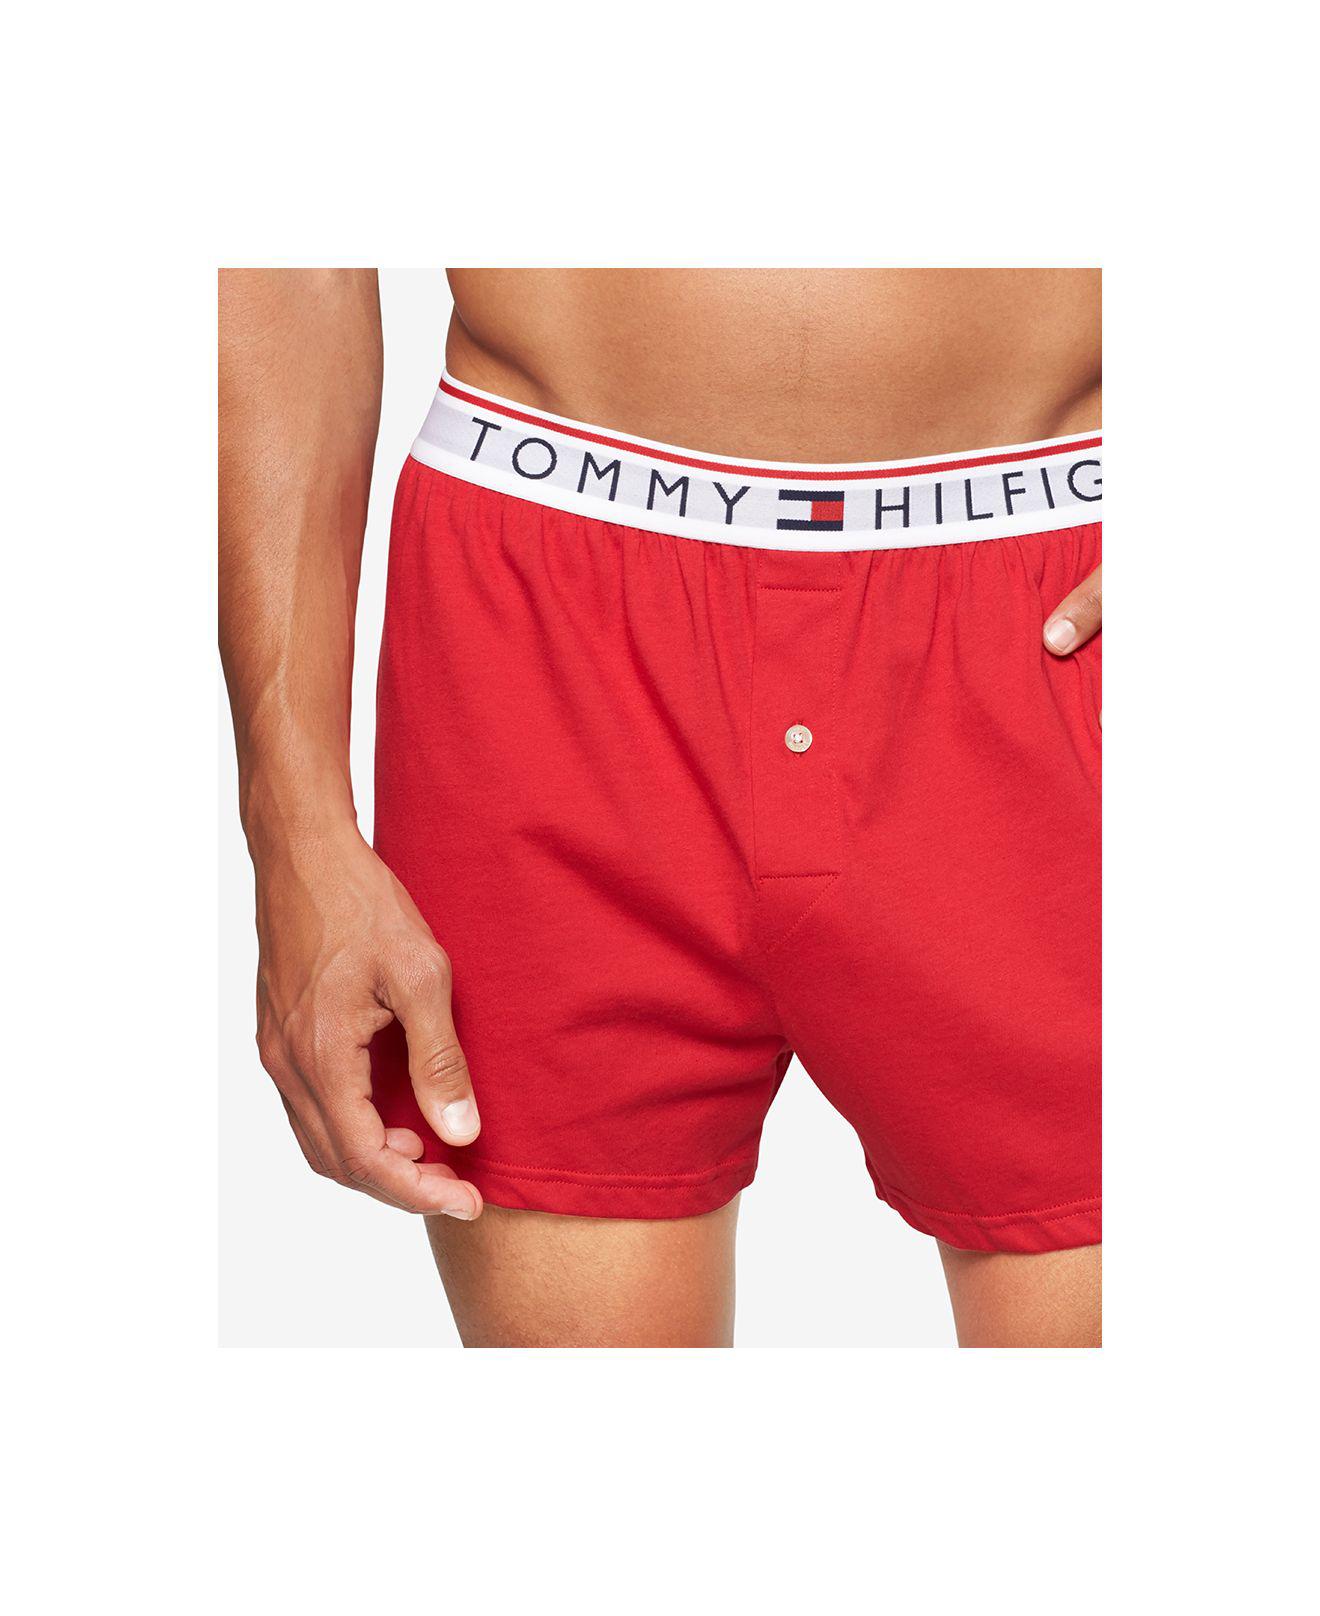 Details about   Tommy Hilfiger Men's Cotton Woven Boxer Icon Trunk